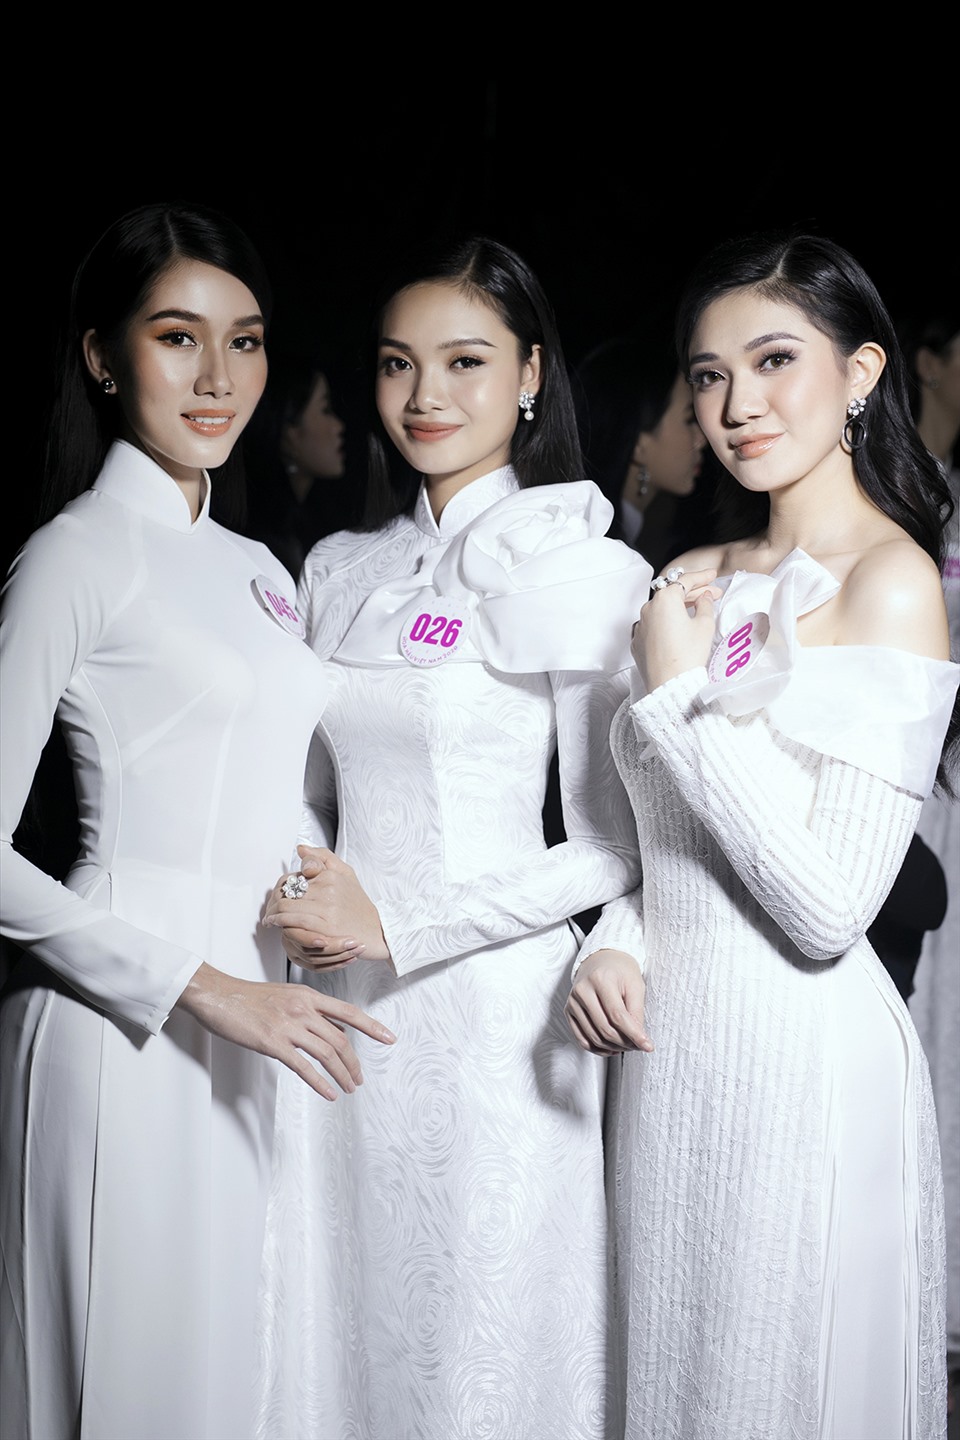 Võ Ngọc Hồng Đào khá nổi bật khi đứng cạnh dàn mỹ nhân Hoa hậu Việt Nam 2020. Hiện tại, các thí sinh Hoa hậu Việt Nam đang bước vào những dự án nhân ái và chuẩn bị cho đêm chung kết. Ảnh: HHVN.